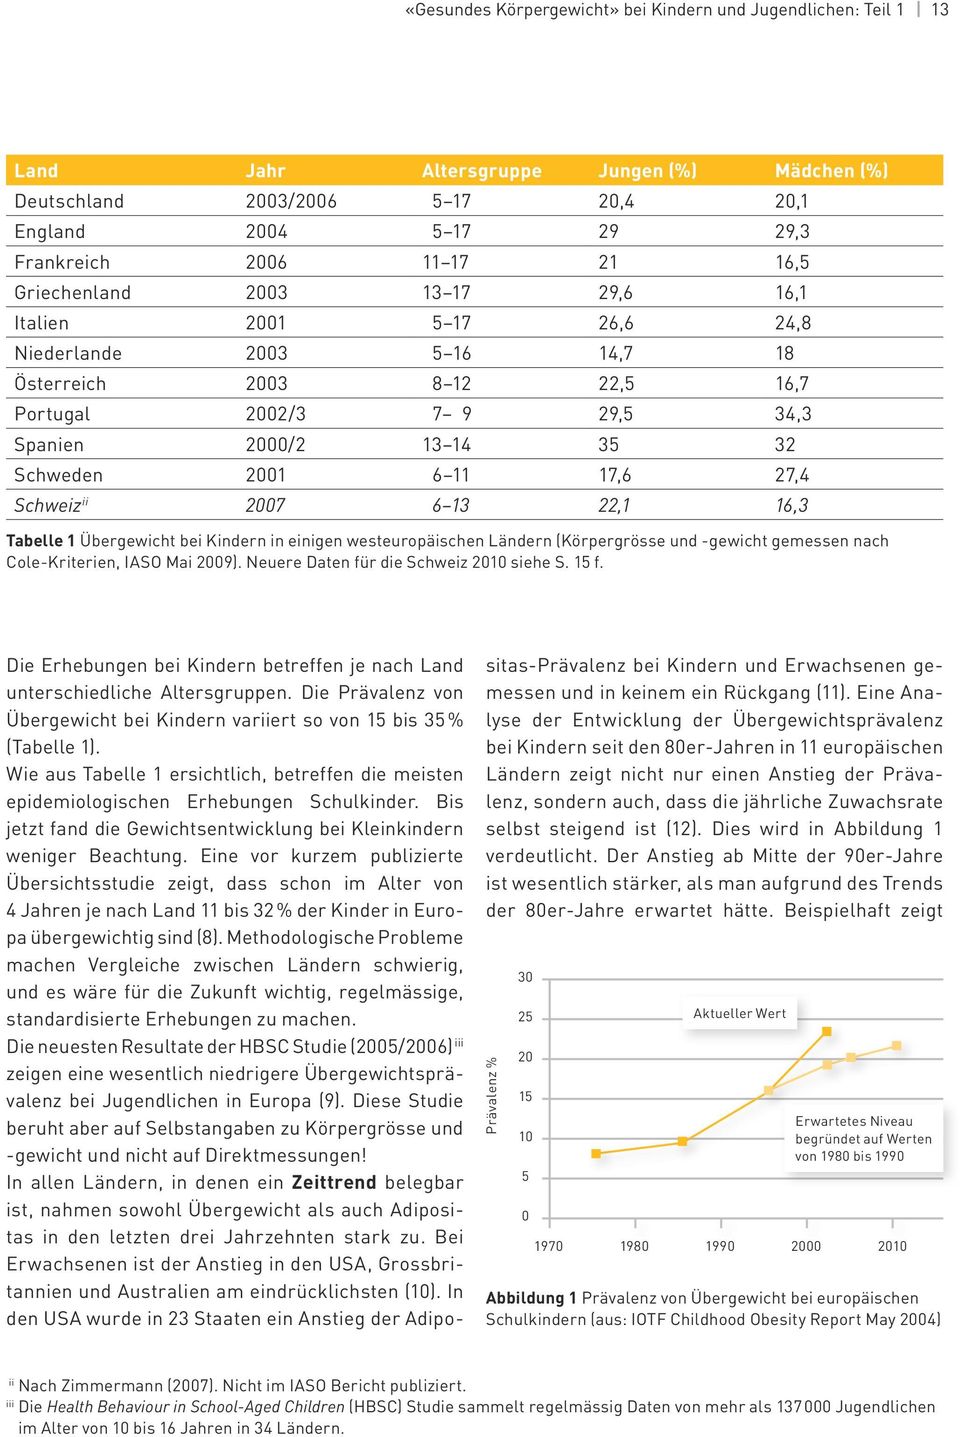 6 11 17,6 27,4 Schweiz ii 2007 6 13 22,1 16,3 Tabelle 1 Übergewicht bei Kindern in einigen westeuropäischen Ländern (Körpergrösse und -gewicht gemessen nach Cole-Kriterien, IASO Mai 2009).